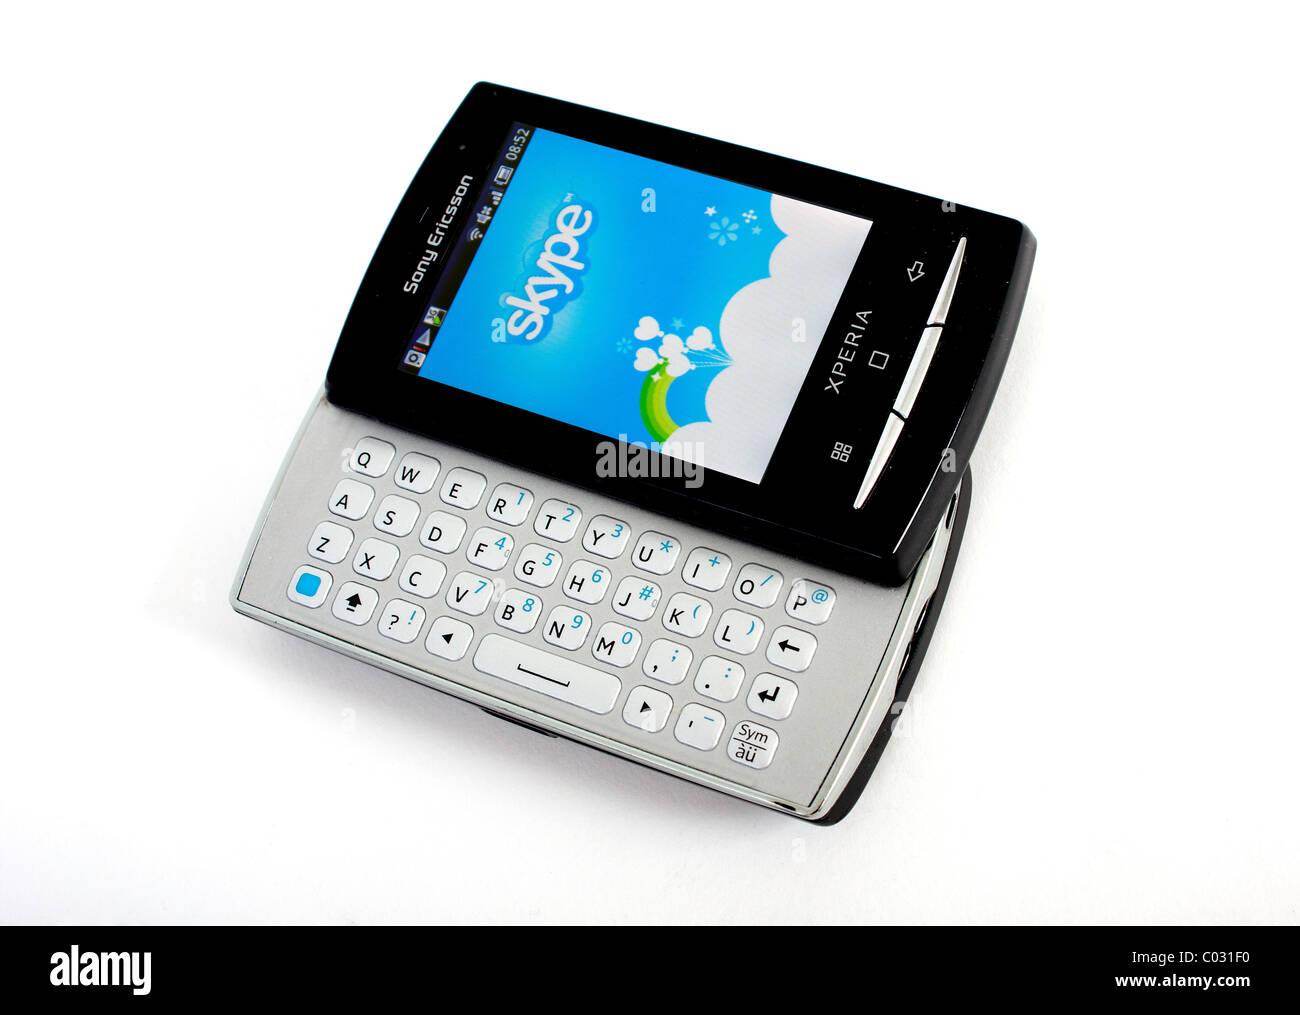 Un Sony Ericsson Xperia mini pro téléphone mobile sur un fond blanc comme une image de marque du produit montrant Skype pour téléphoner gratuitement Banque D'Images